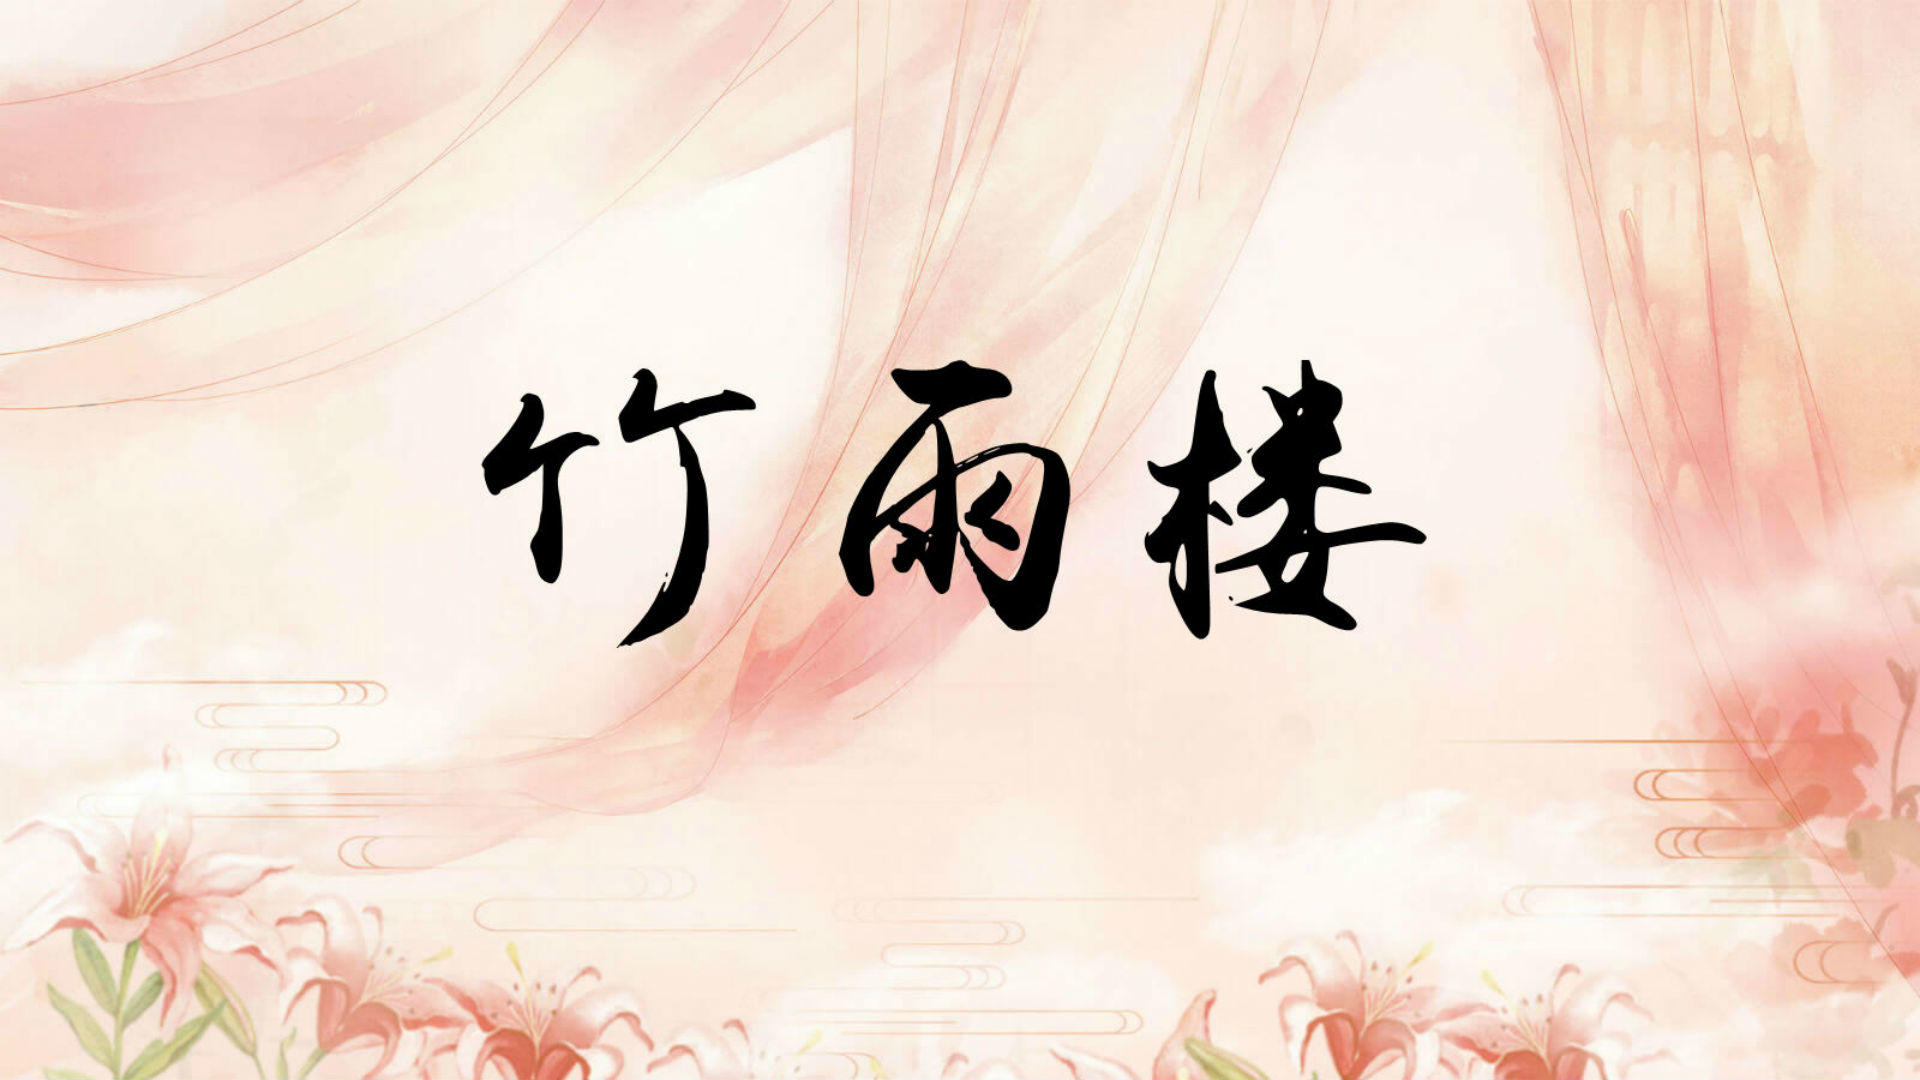 Banner of ジュユロウ 